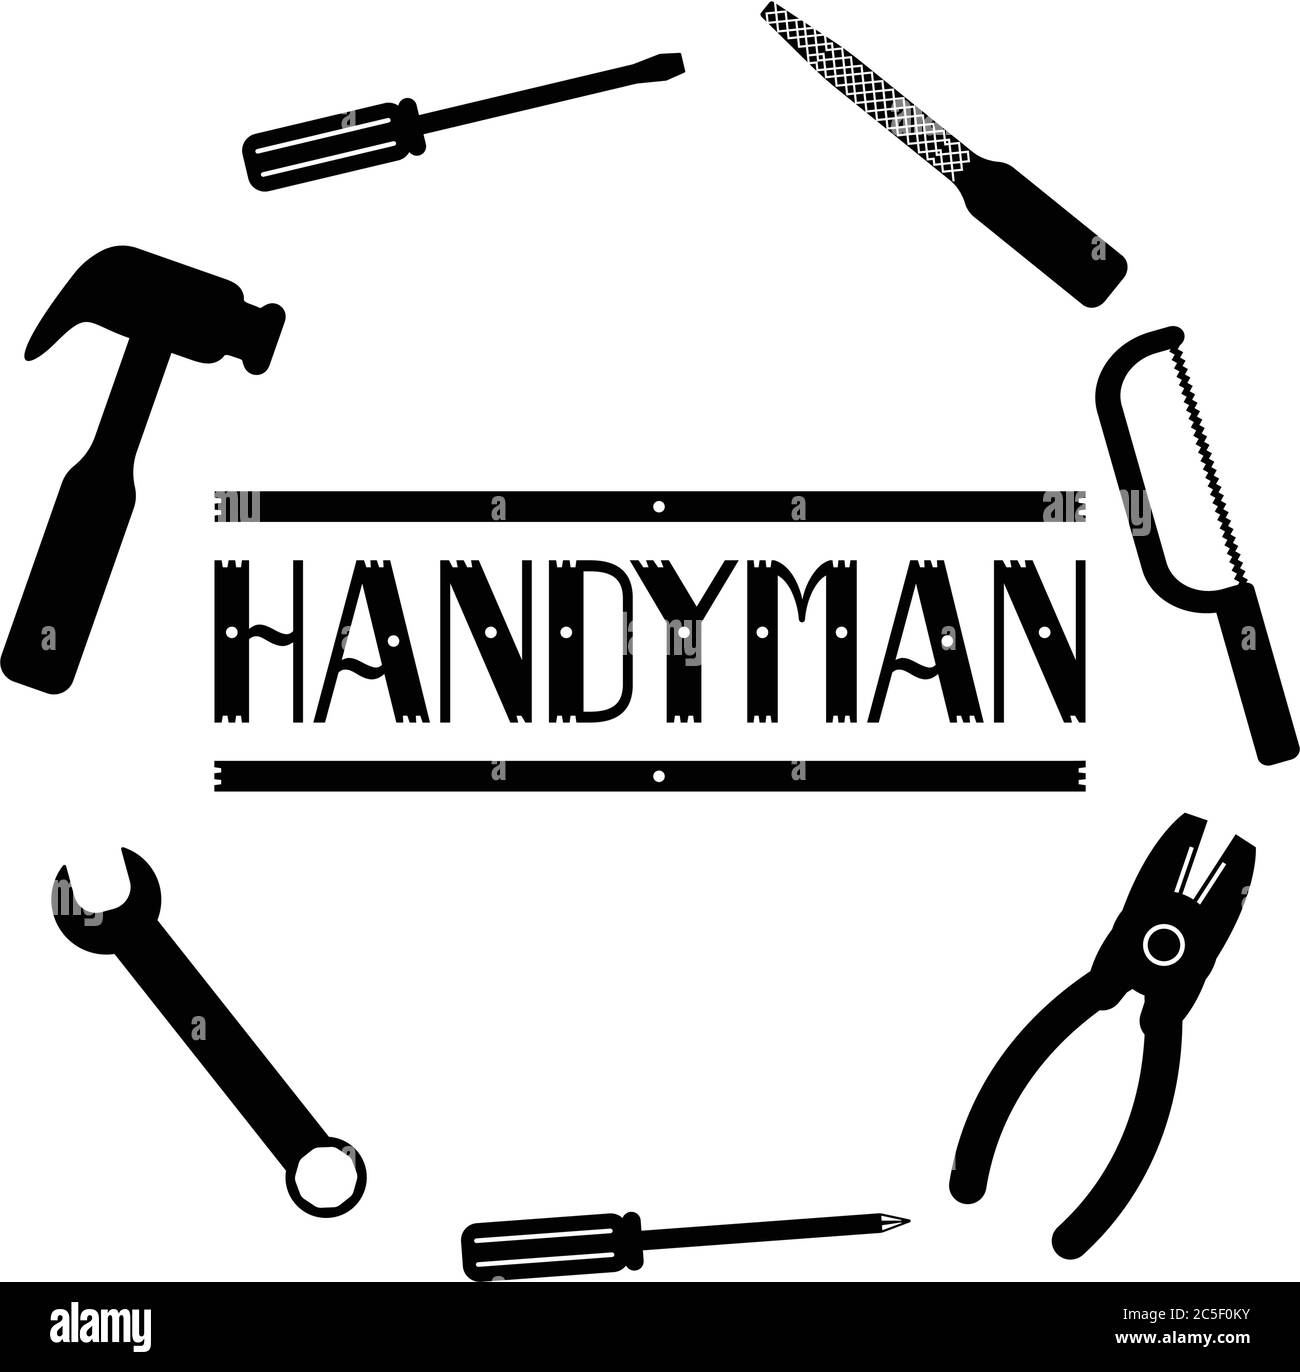 Werkzeuge Schwarze Sägeschrauber Hammer Schraubendreher Icon Set Handyman Services Toolbox Vektor-Illustration Stock Vektor